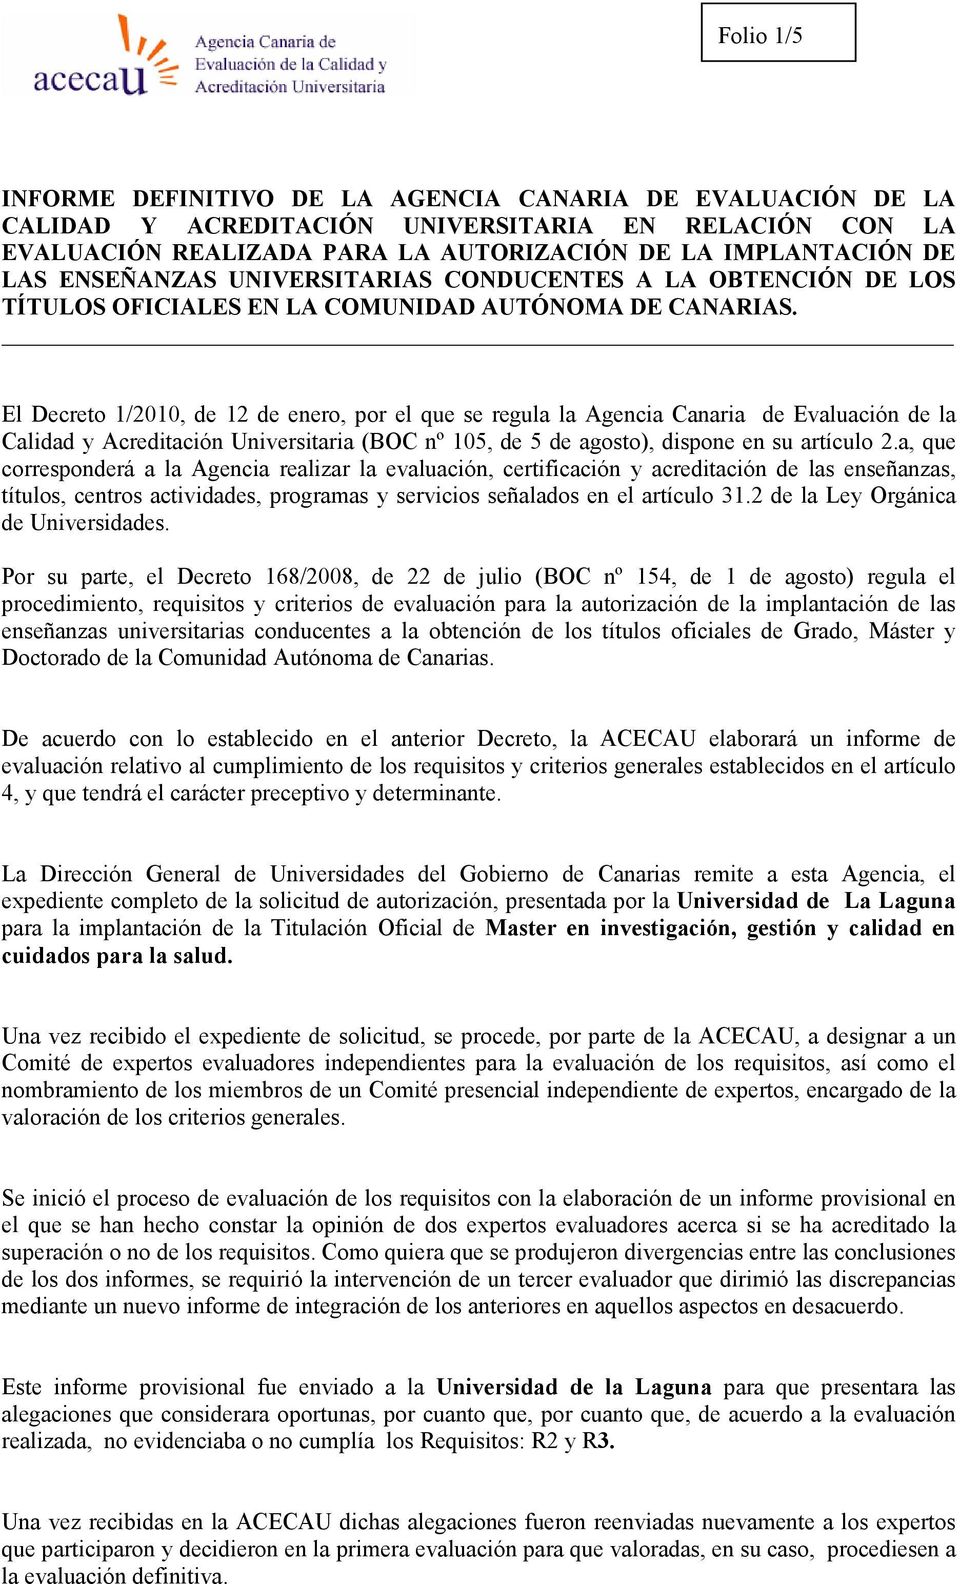 El Decreto 1/2010, de 12 de enero, por el que se regula la Agencia Canaria de Evaluación de la Calidad y Acreditación Universitaria (BOC nº 105, de 5 de agosto), dispone en su artículo 2.